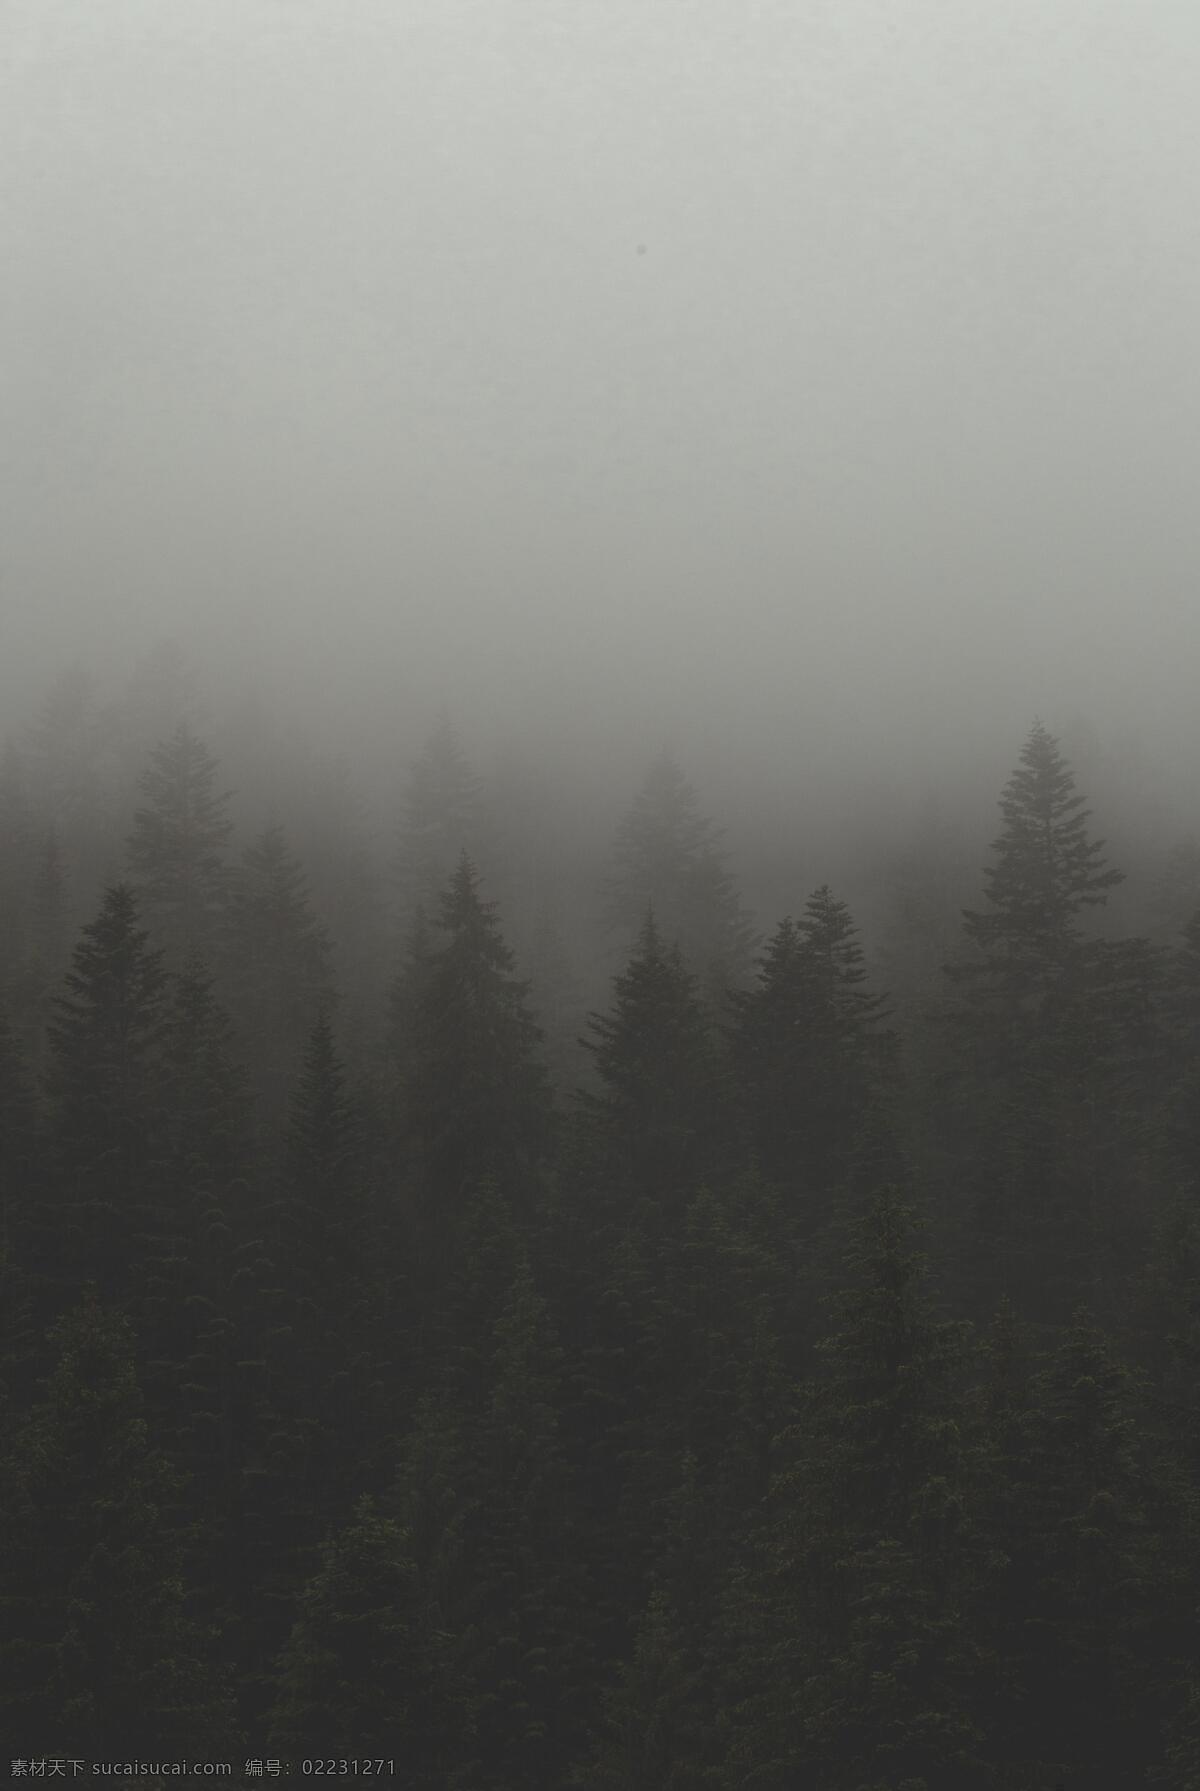 森林大雾 雾气 弥漫 雾气弥漫 大气 大雾 雾天 大雾天 山林 树林 树林大雾 雾中森林 雾中树木 雾中花草 雾中草木 仙境 雾气仙境 弥漫雾气 自然景观 自然风景